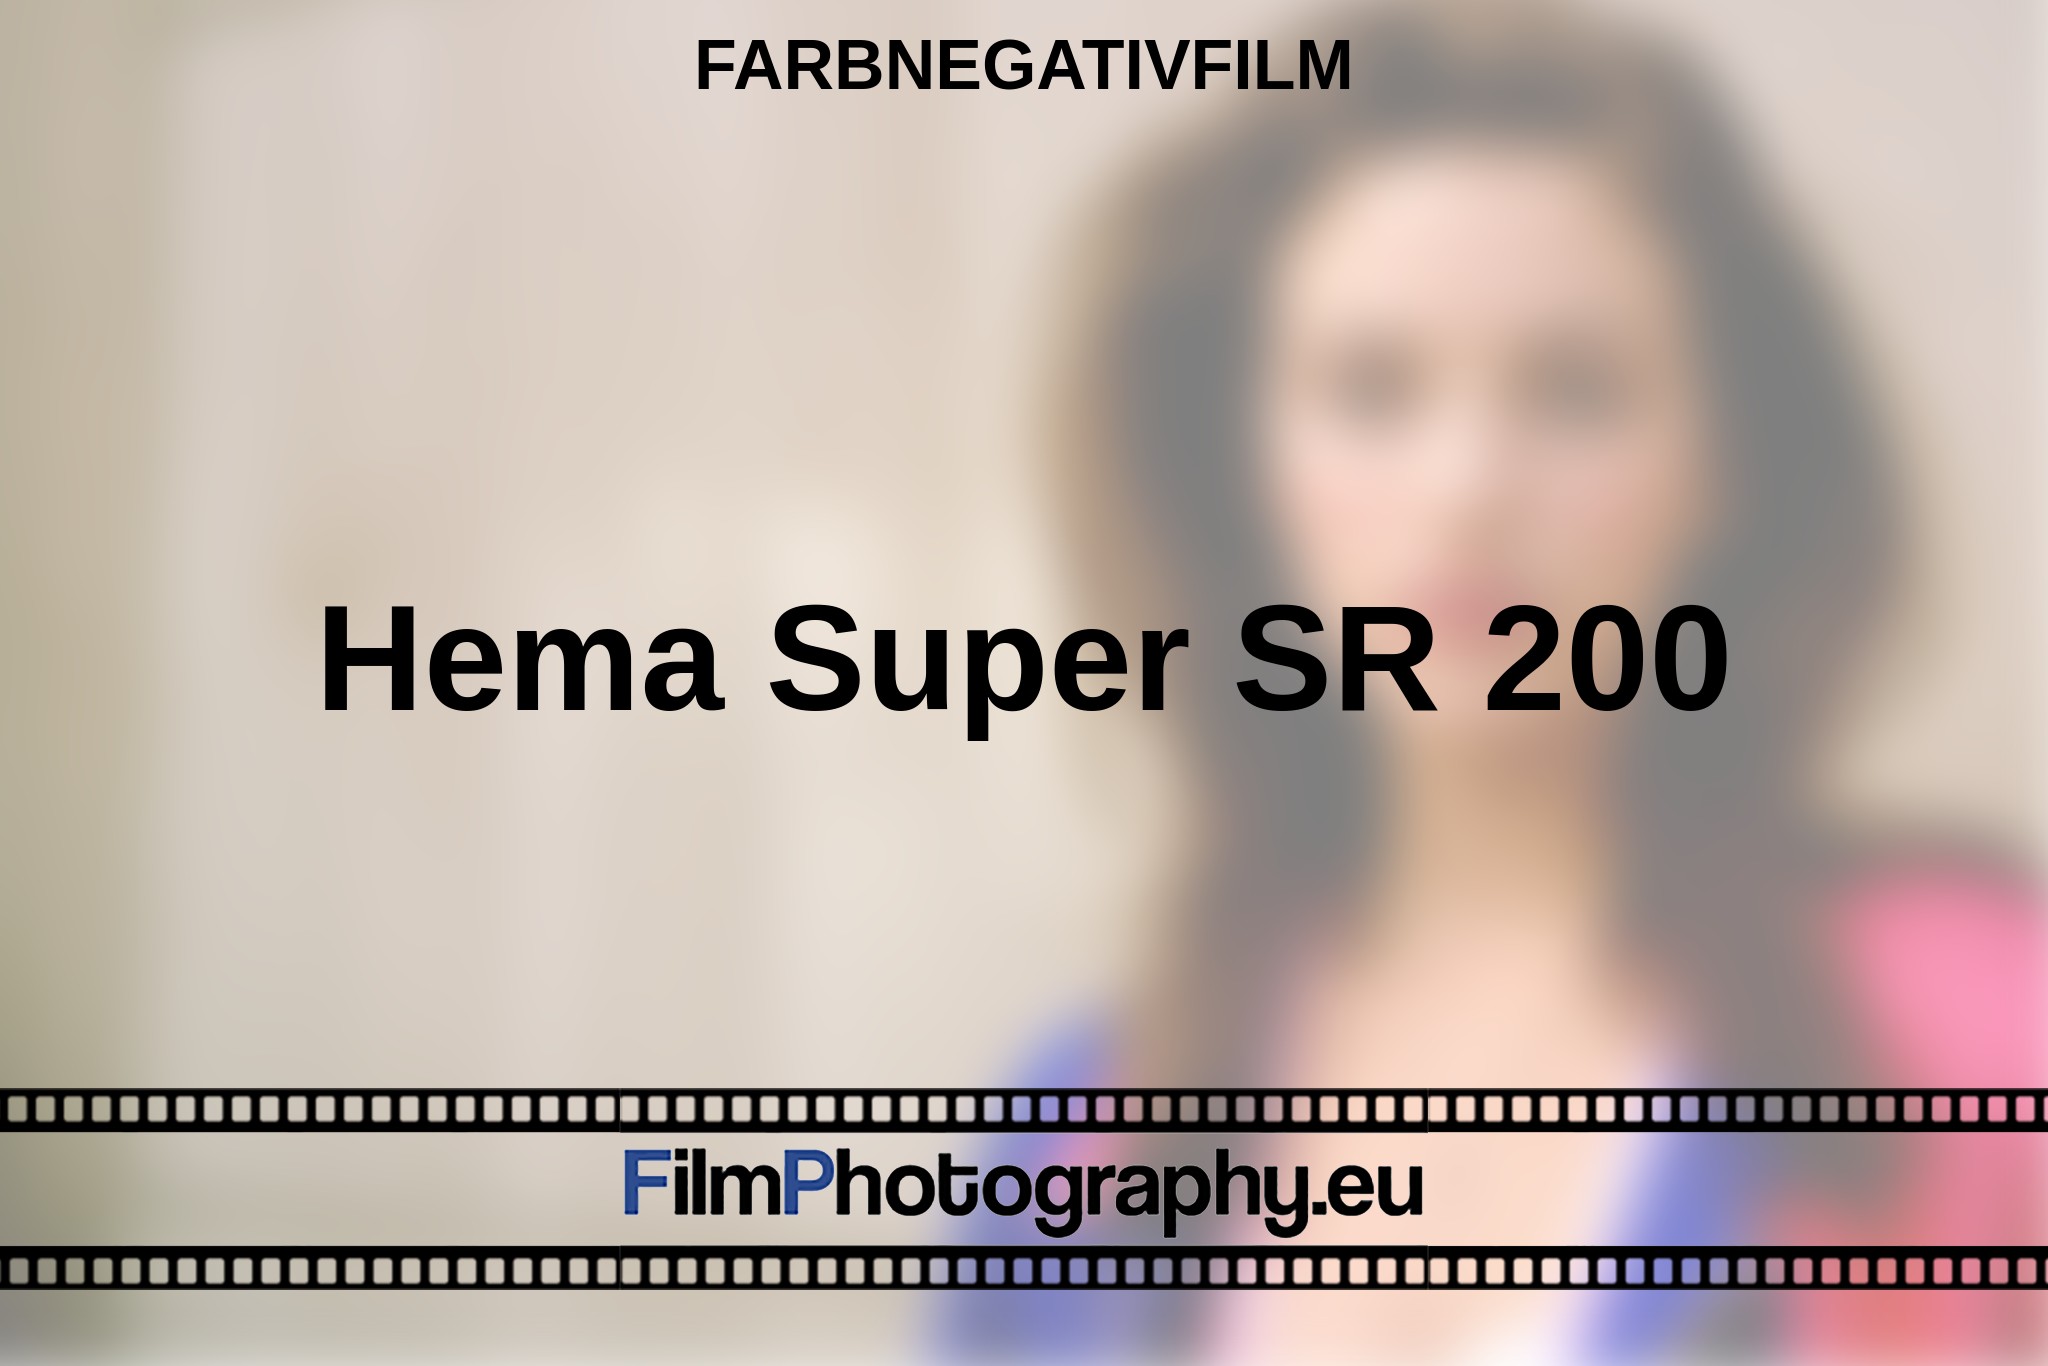 hema-super-sr-200-farbnegativfilm-bnv.jpg